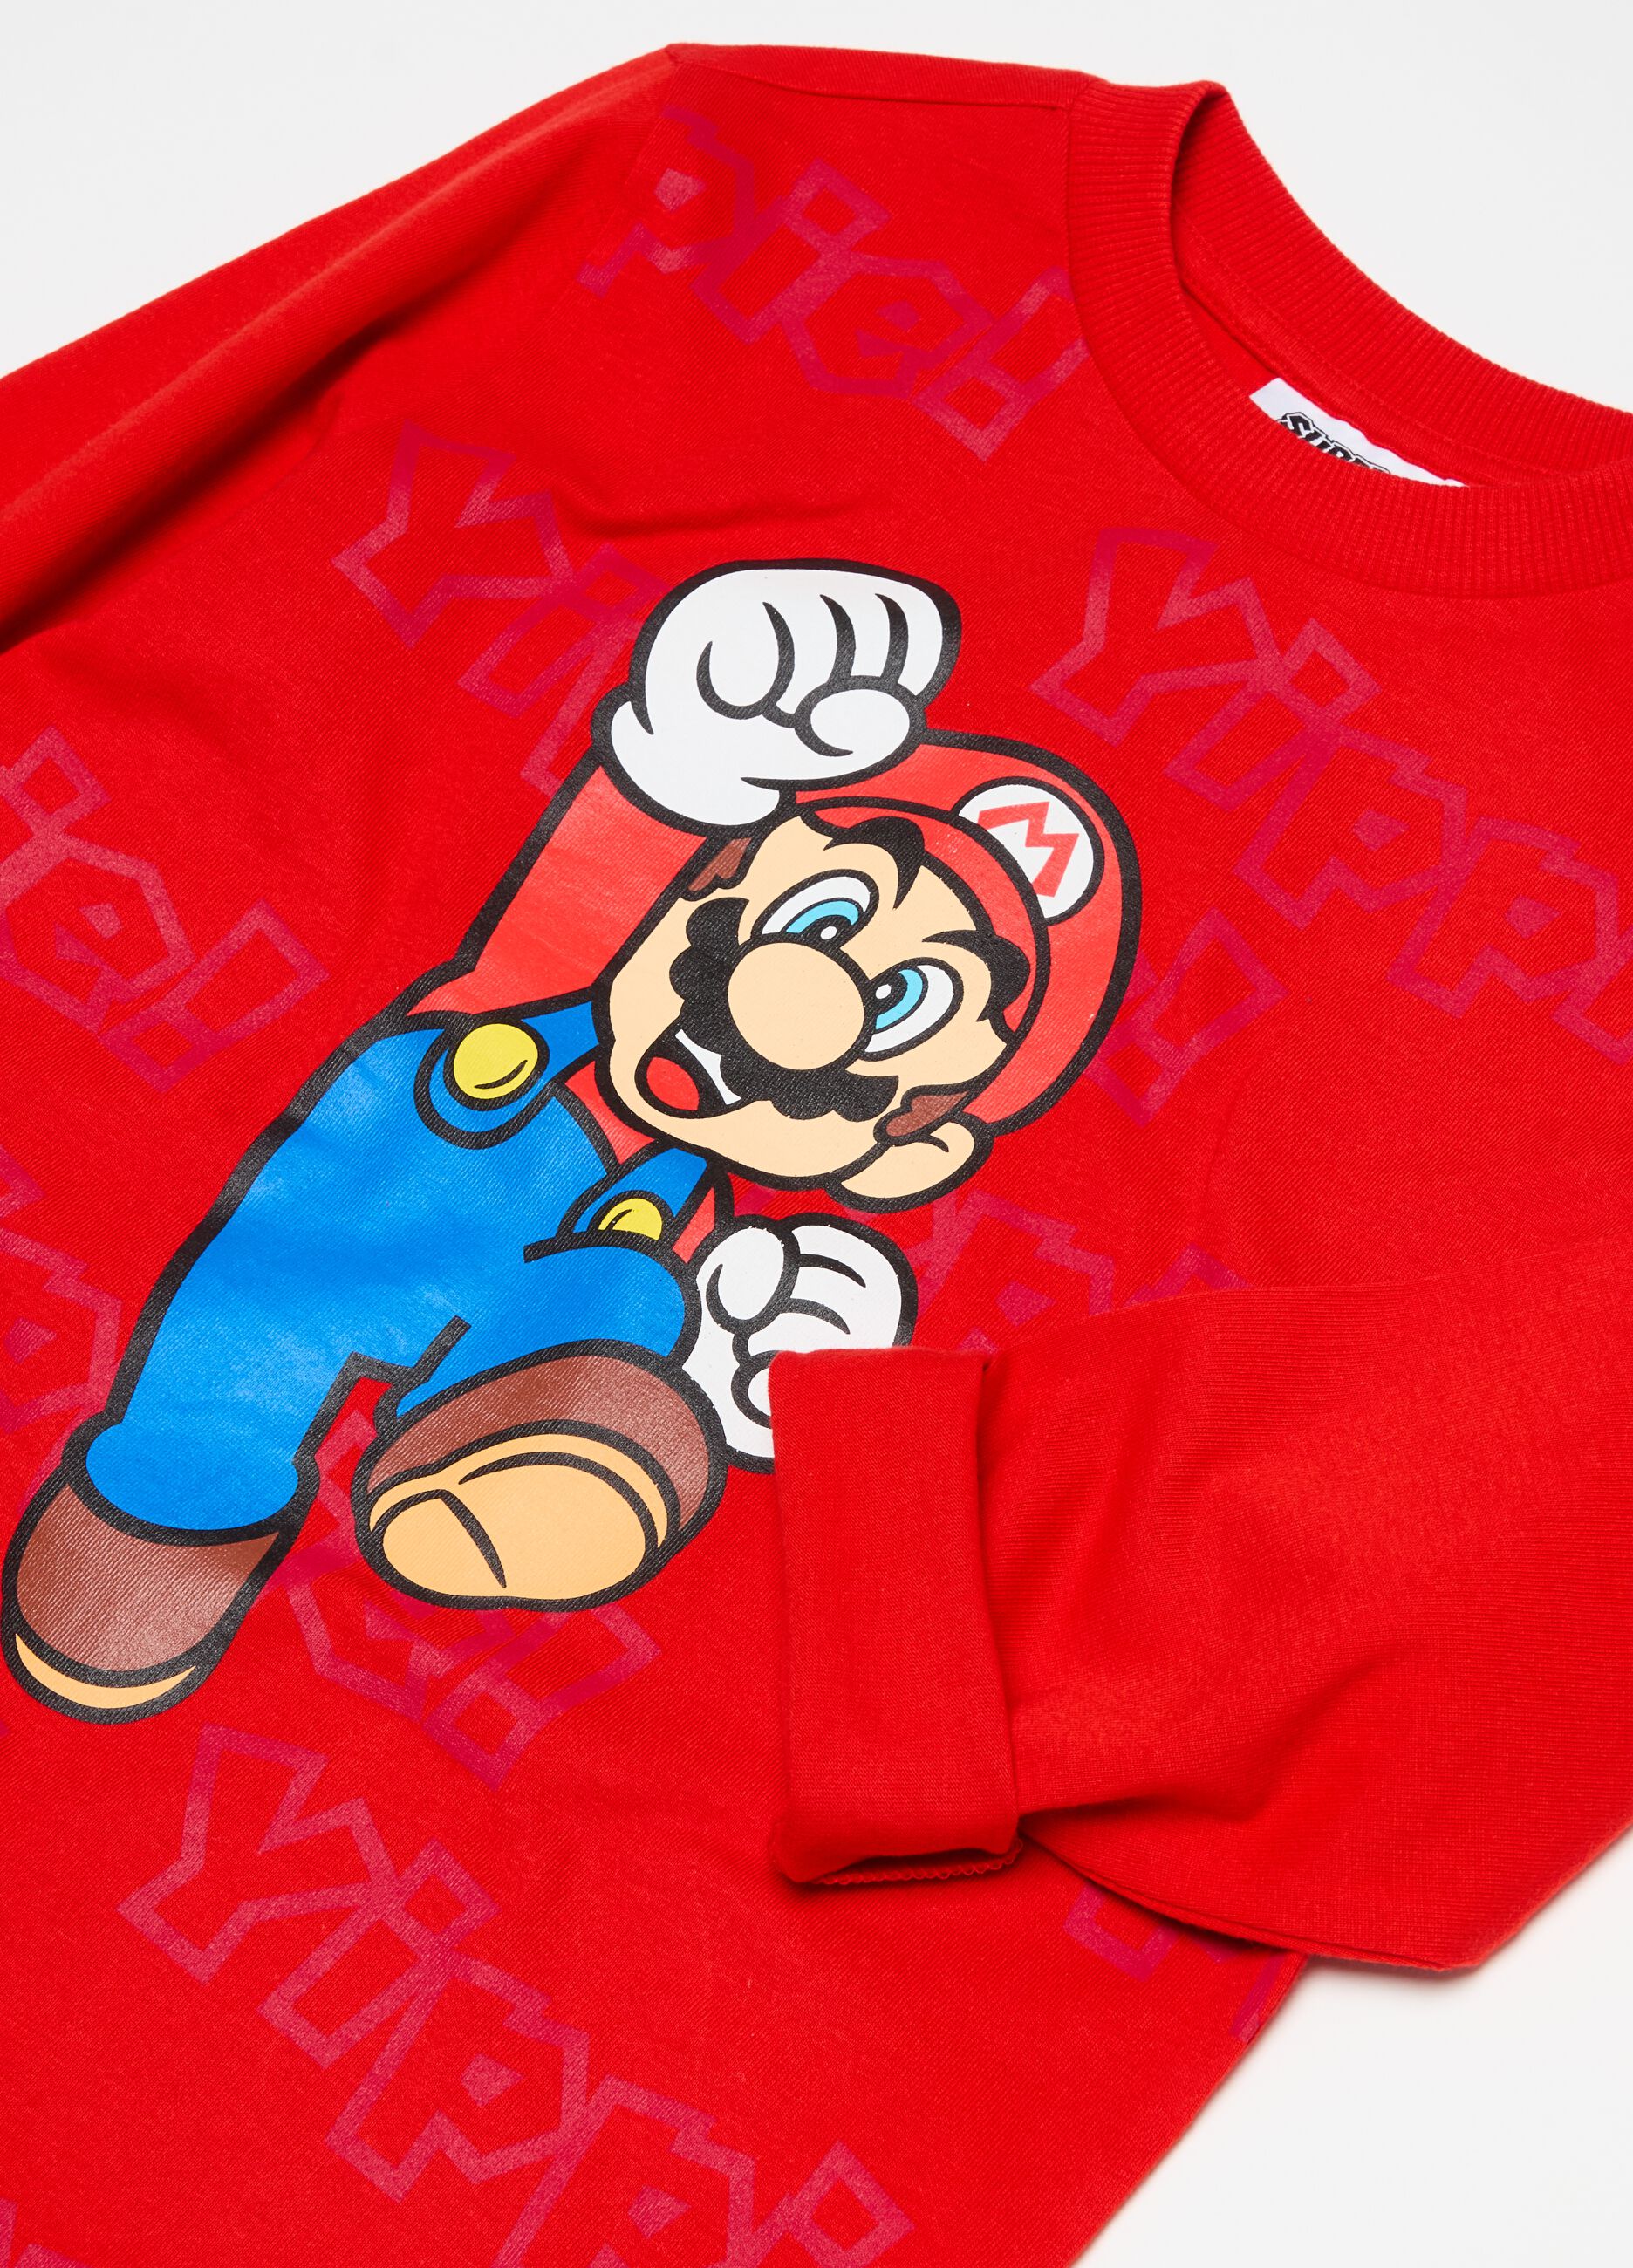 Camiseta de manga larga Super Mario™